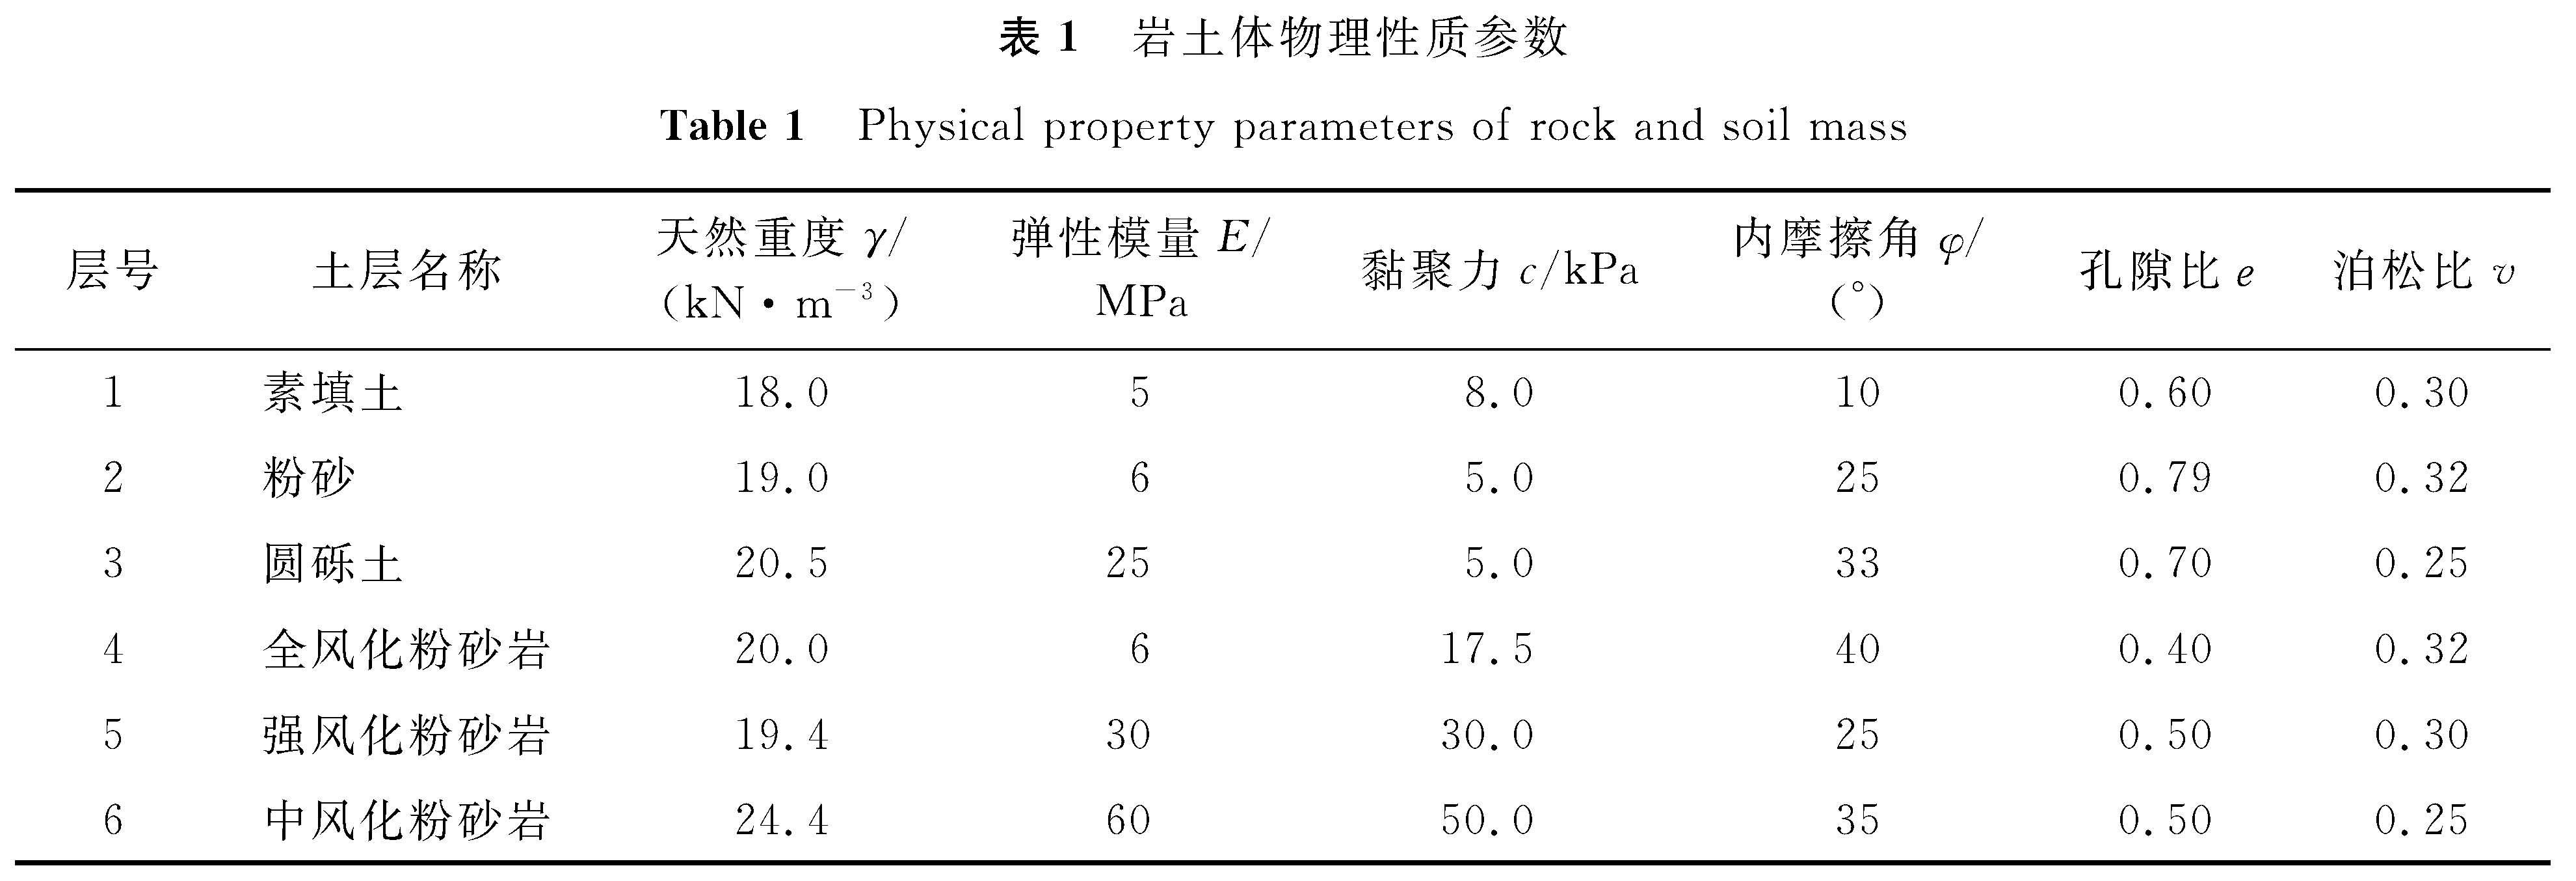 表1 岩土体物理性质参数<br/>Table 1 Physical property parameters of rock and soil mass